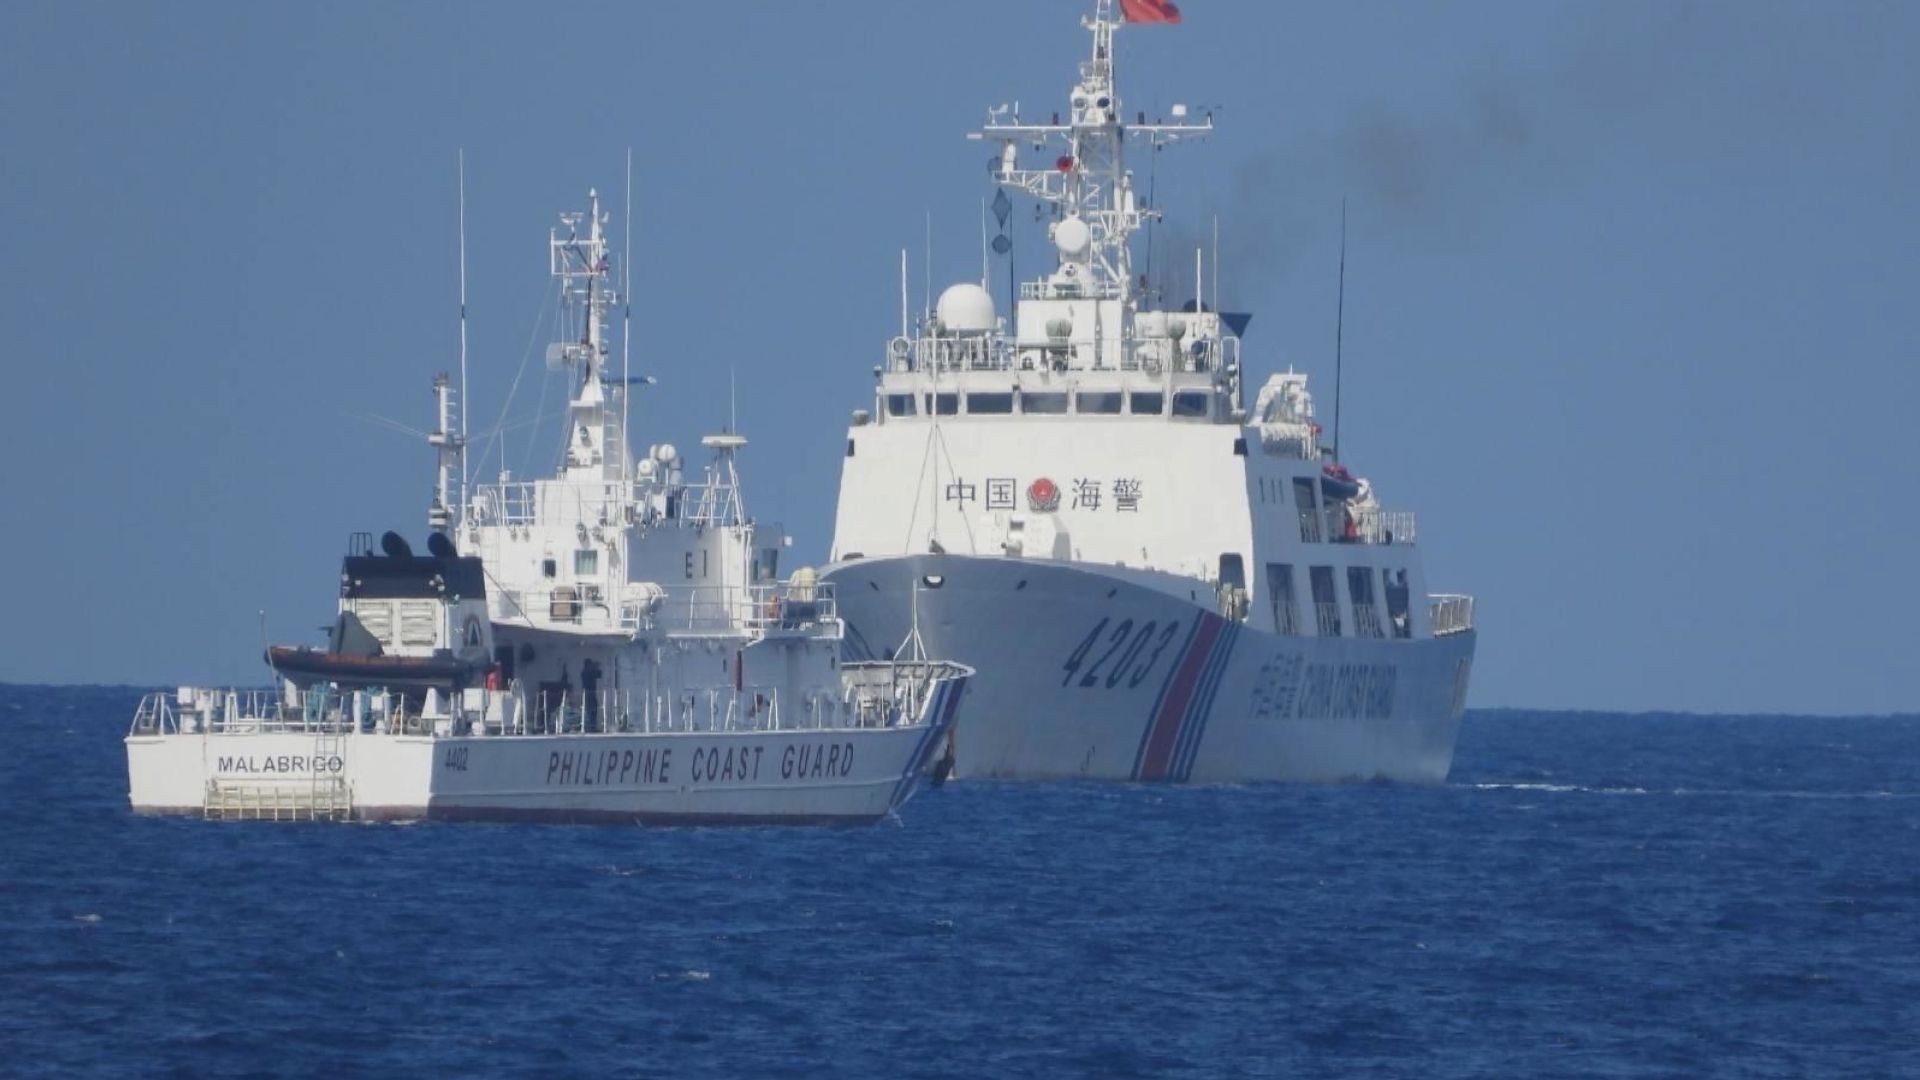 菲稱艦艇遭中國海警阻撓 中方回應指是依法執法